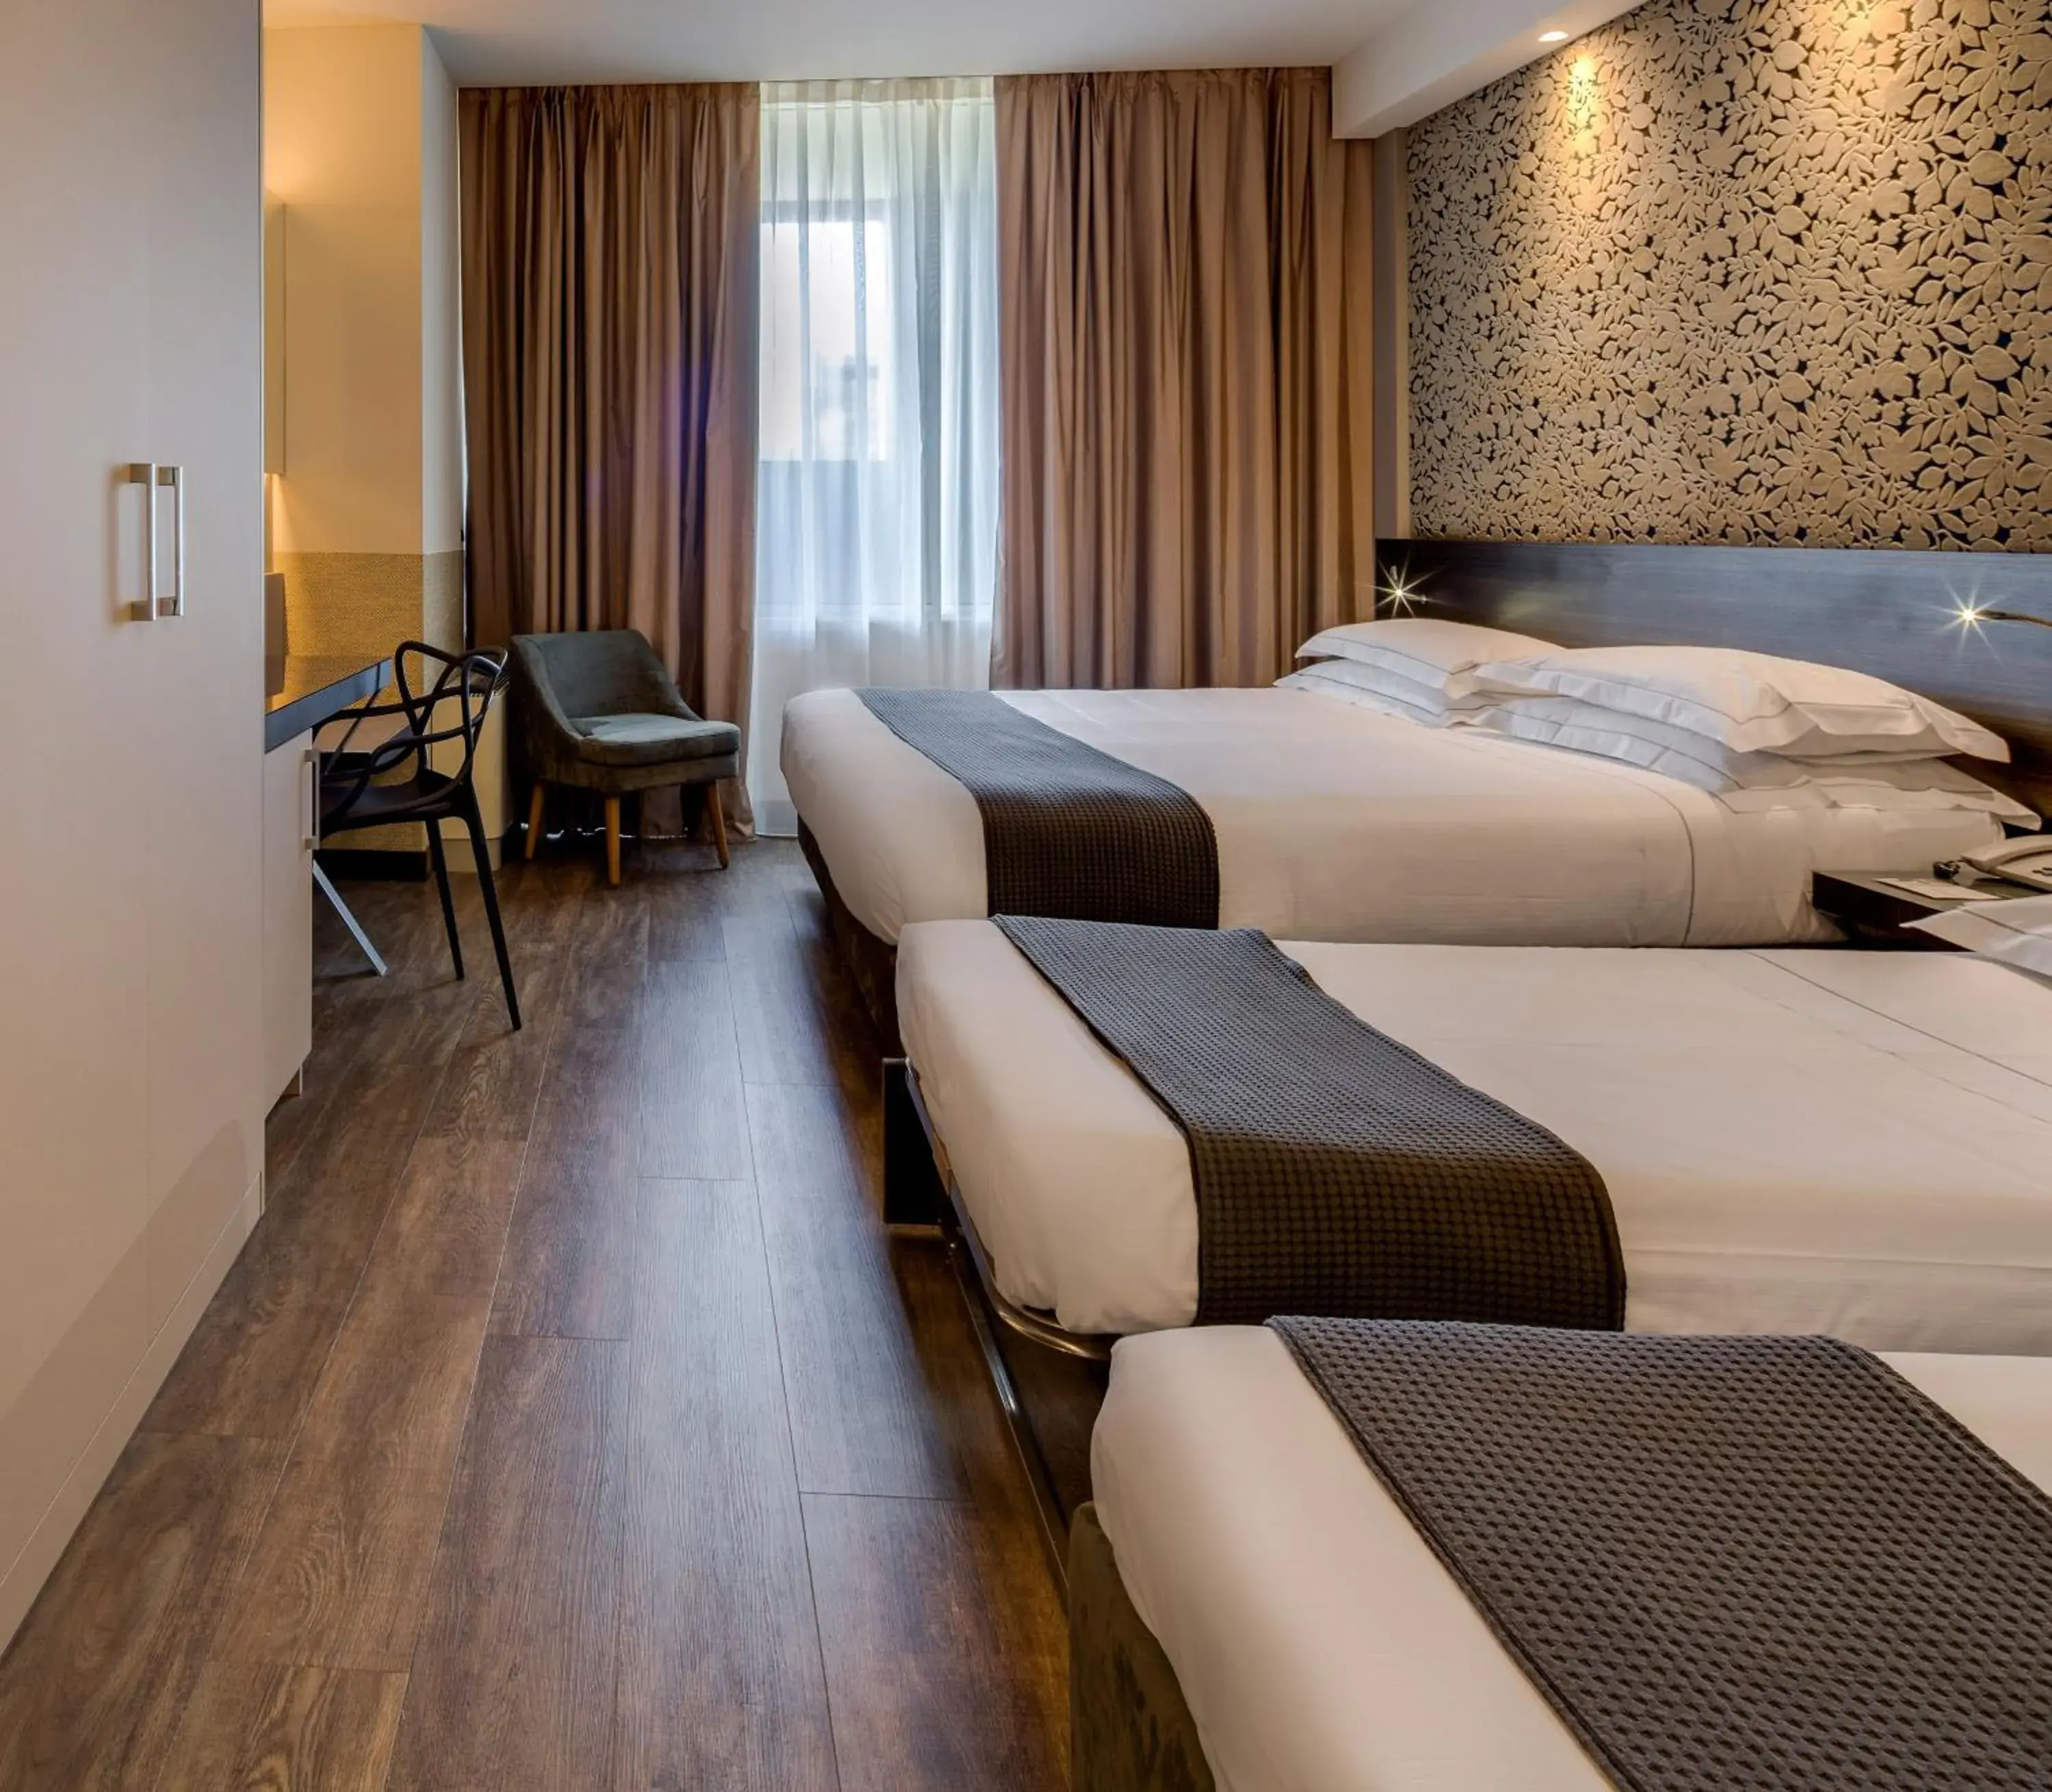 Bed in Best Western Plus Hotel Farnese